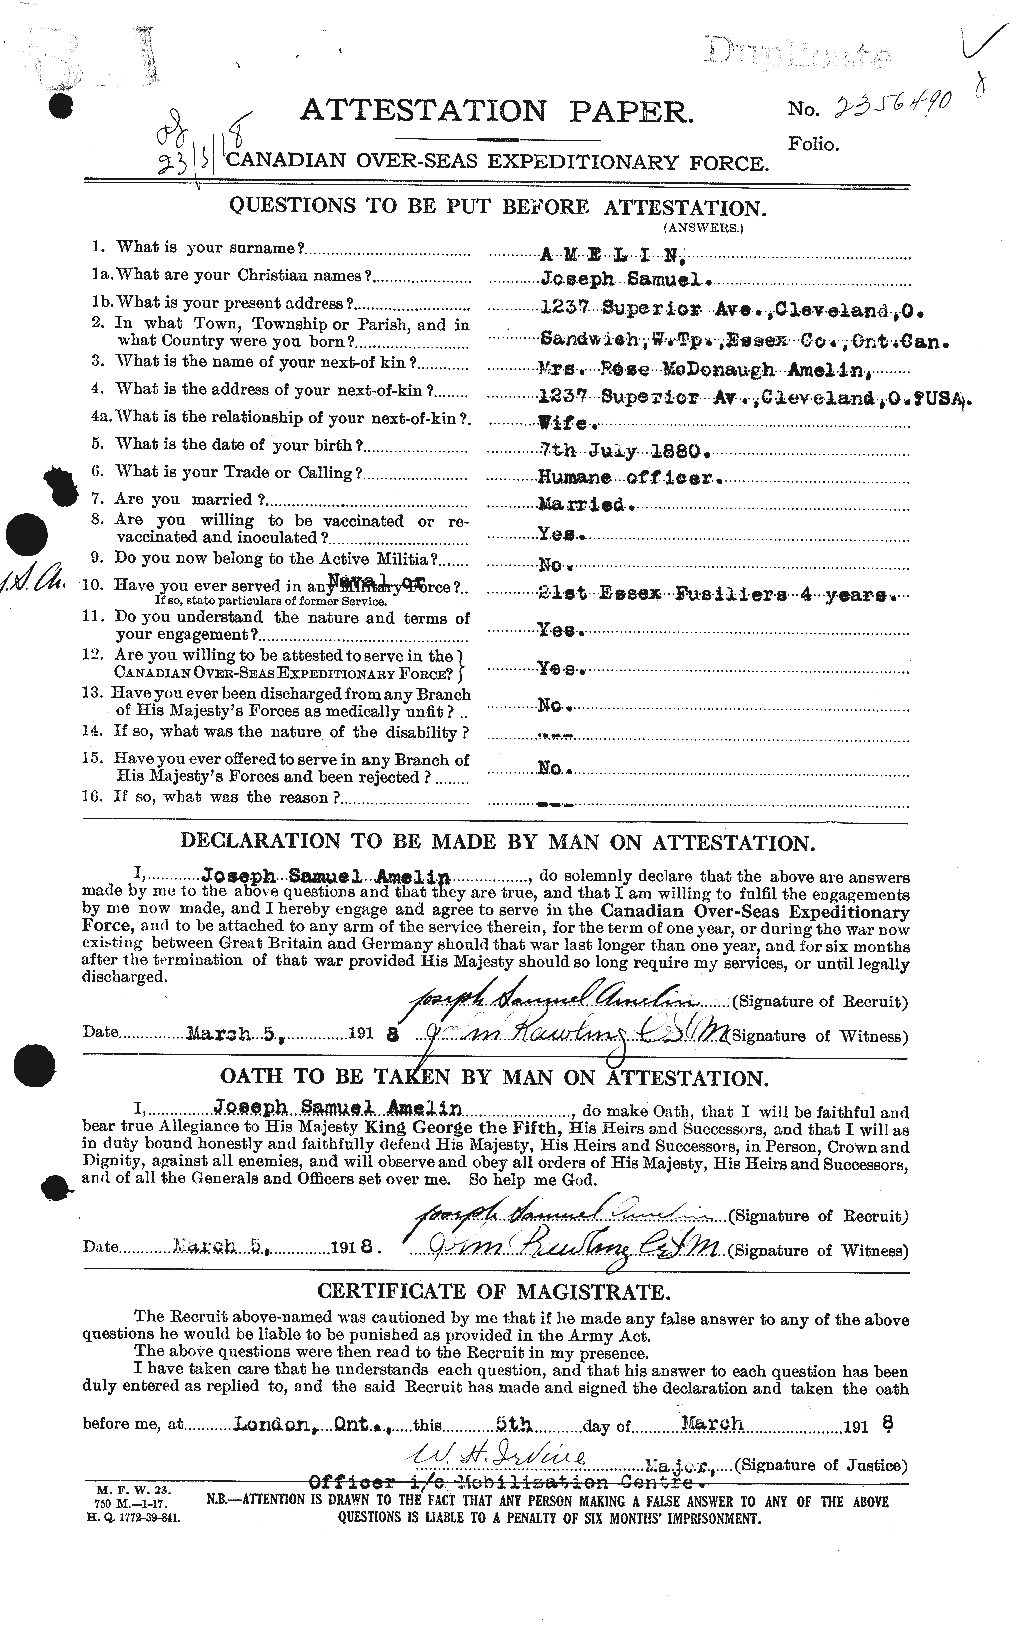 Dossiers du Personnel de la Première Guerre mondiale - CEC 208906a